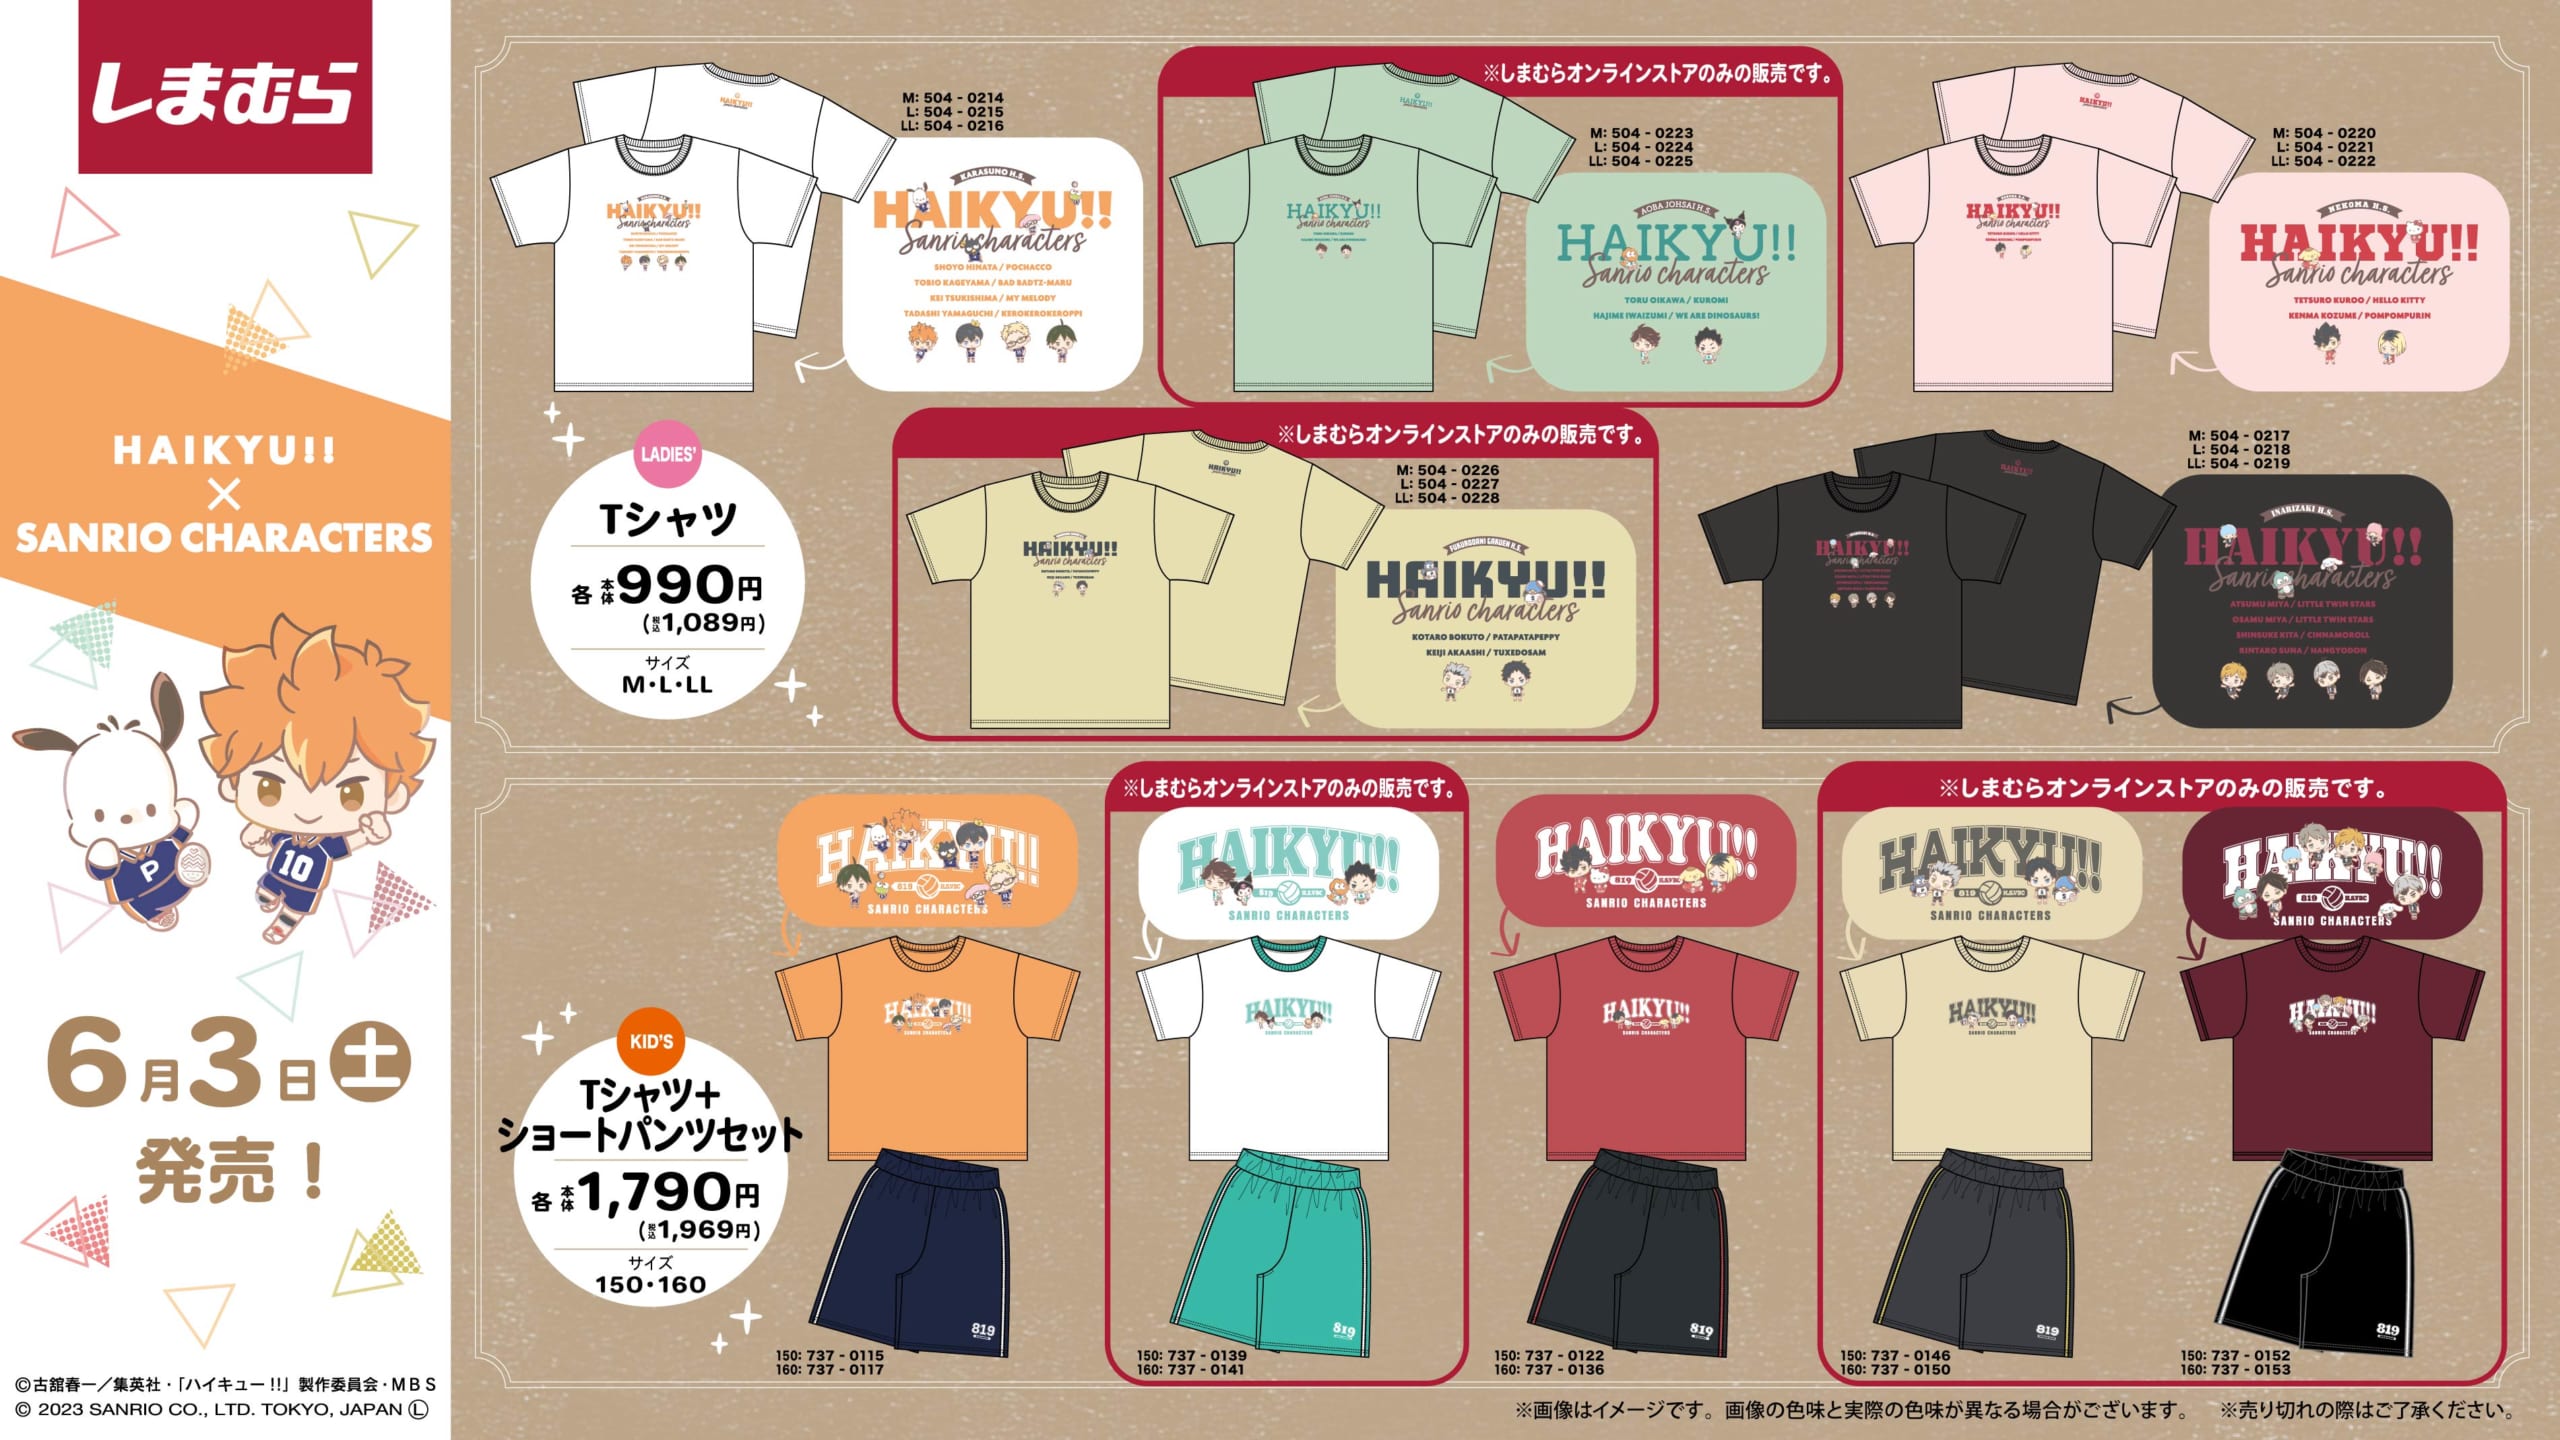 「ハイキュー×サンリオ」コラボアイテムがしまむらで6月3日より発売！Tシャツ&雑貨が登場